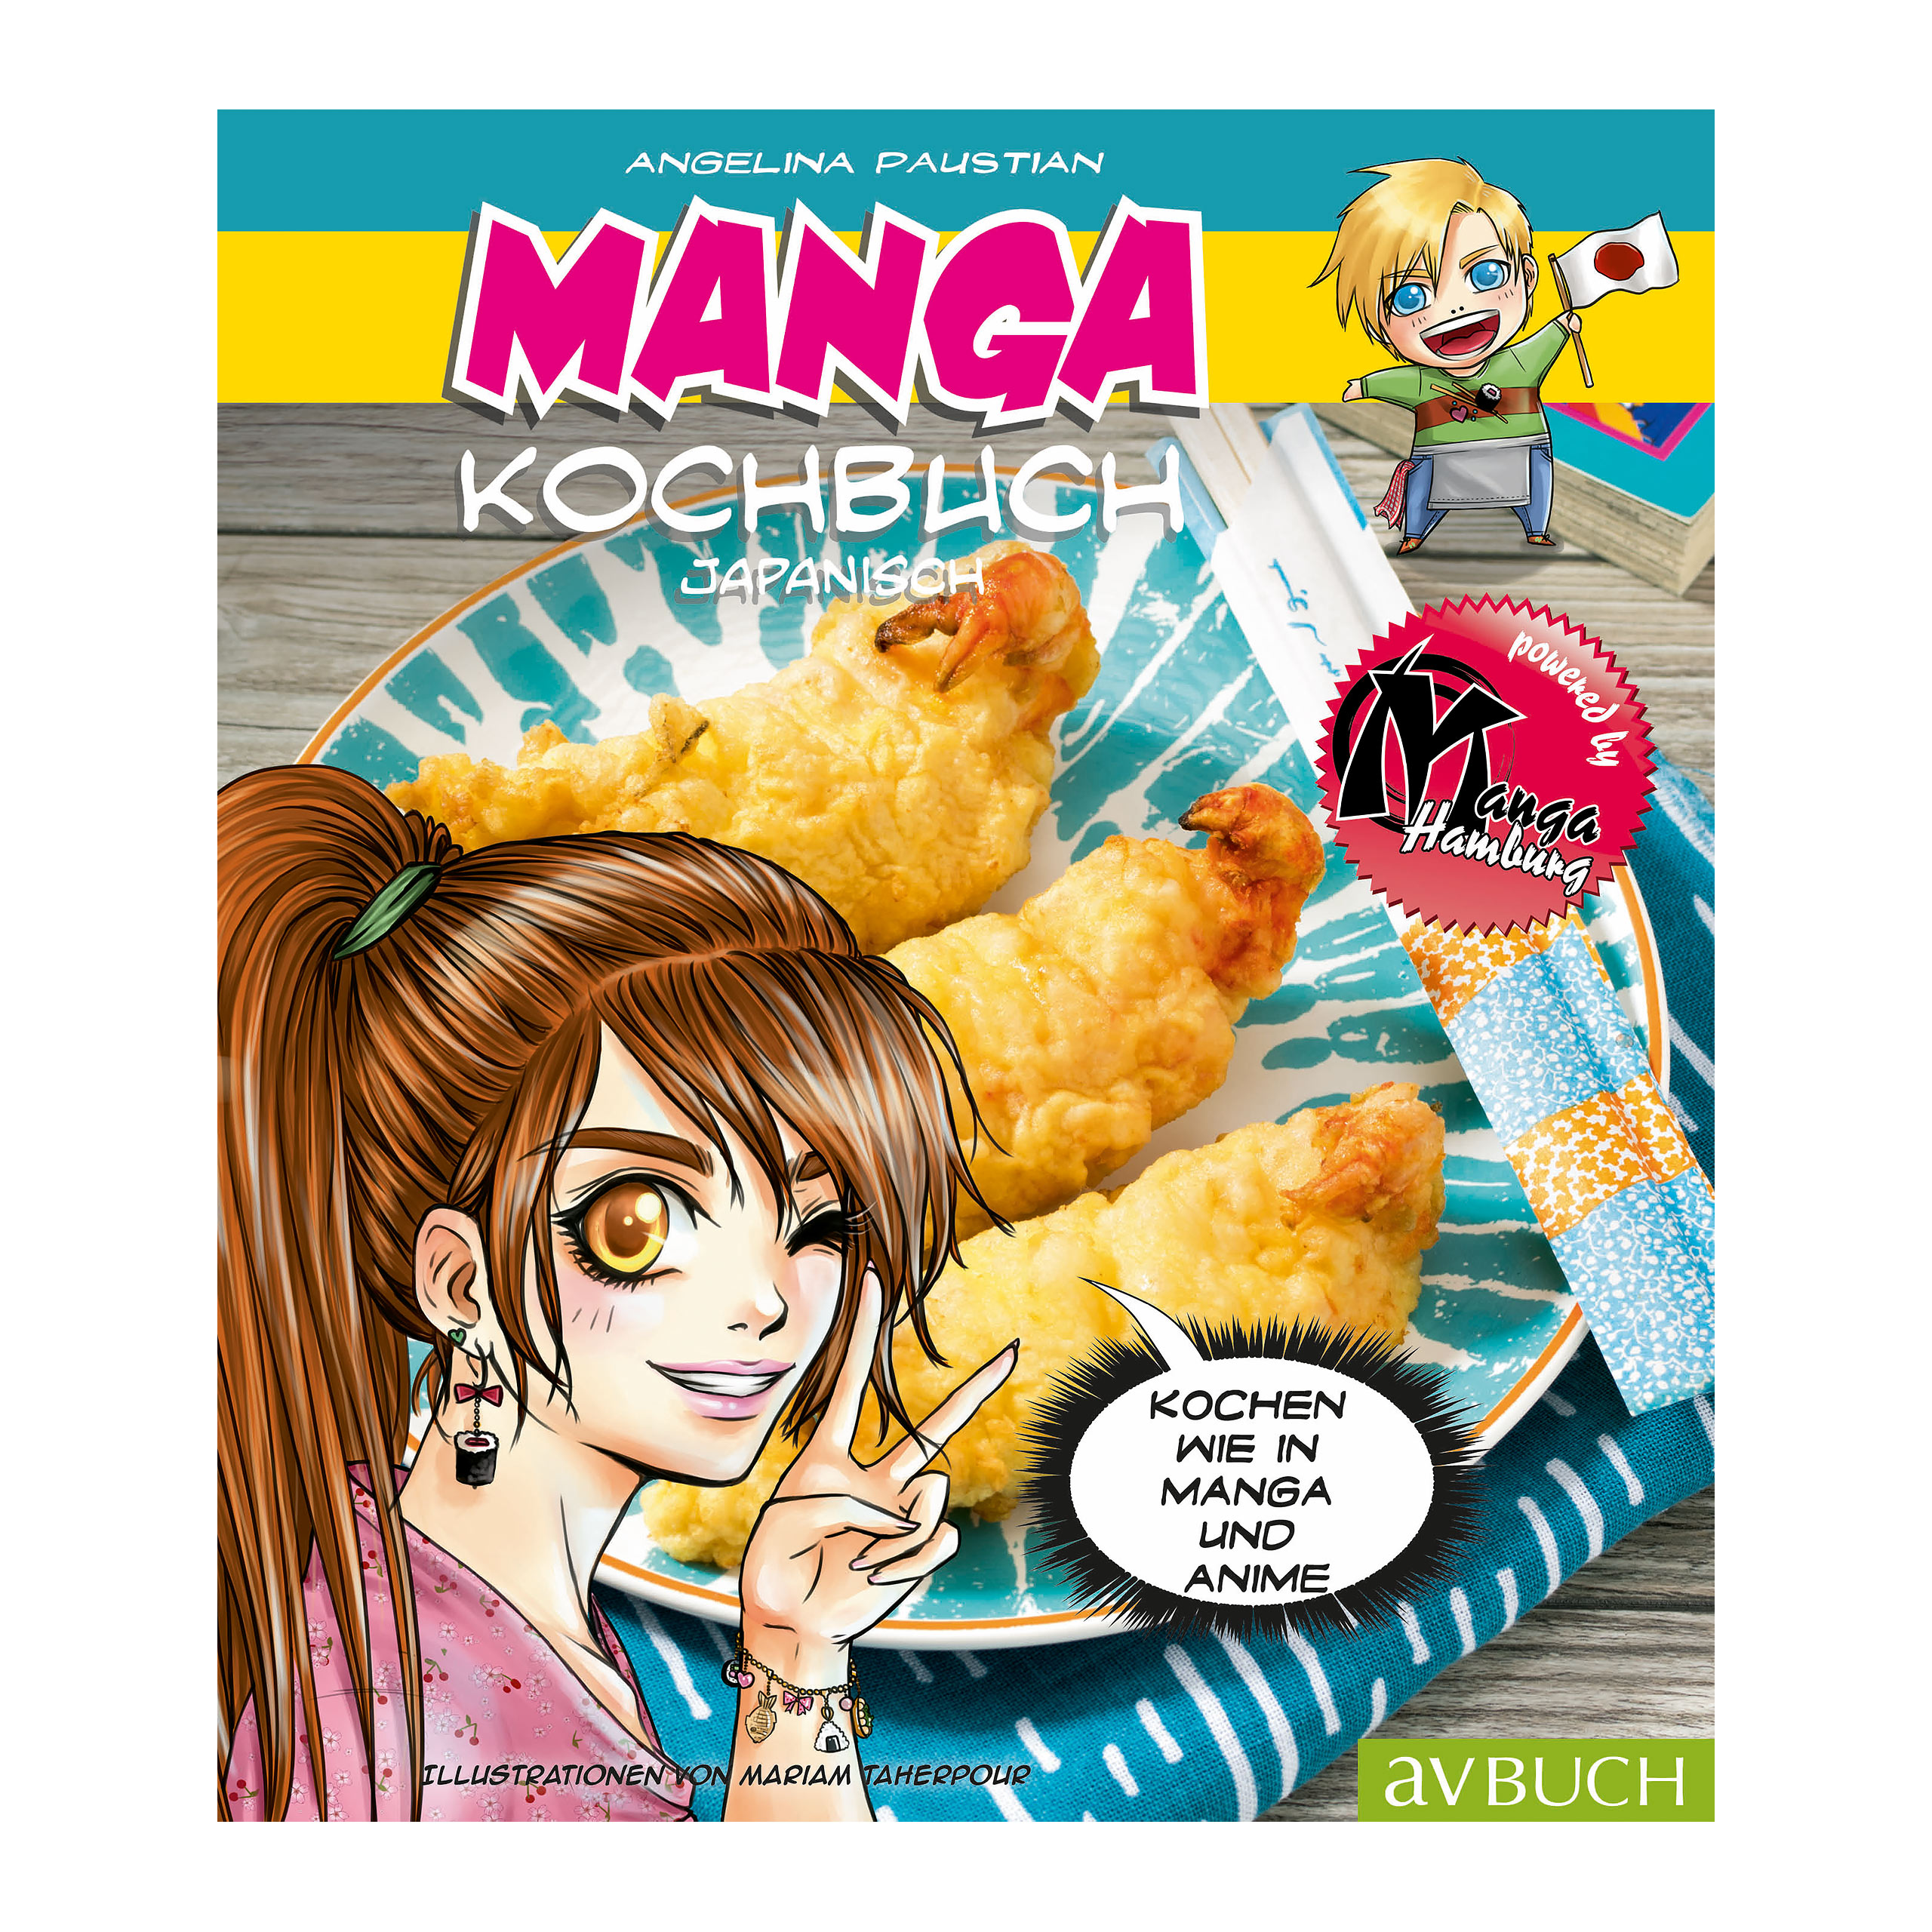 Manga Kochbuch japanisch